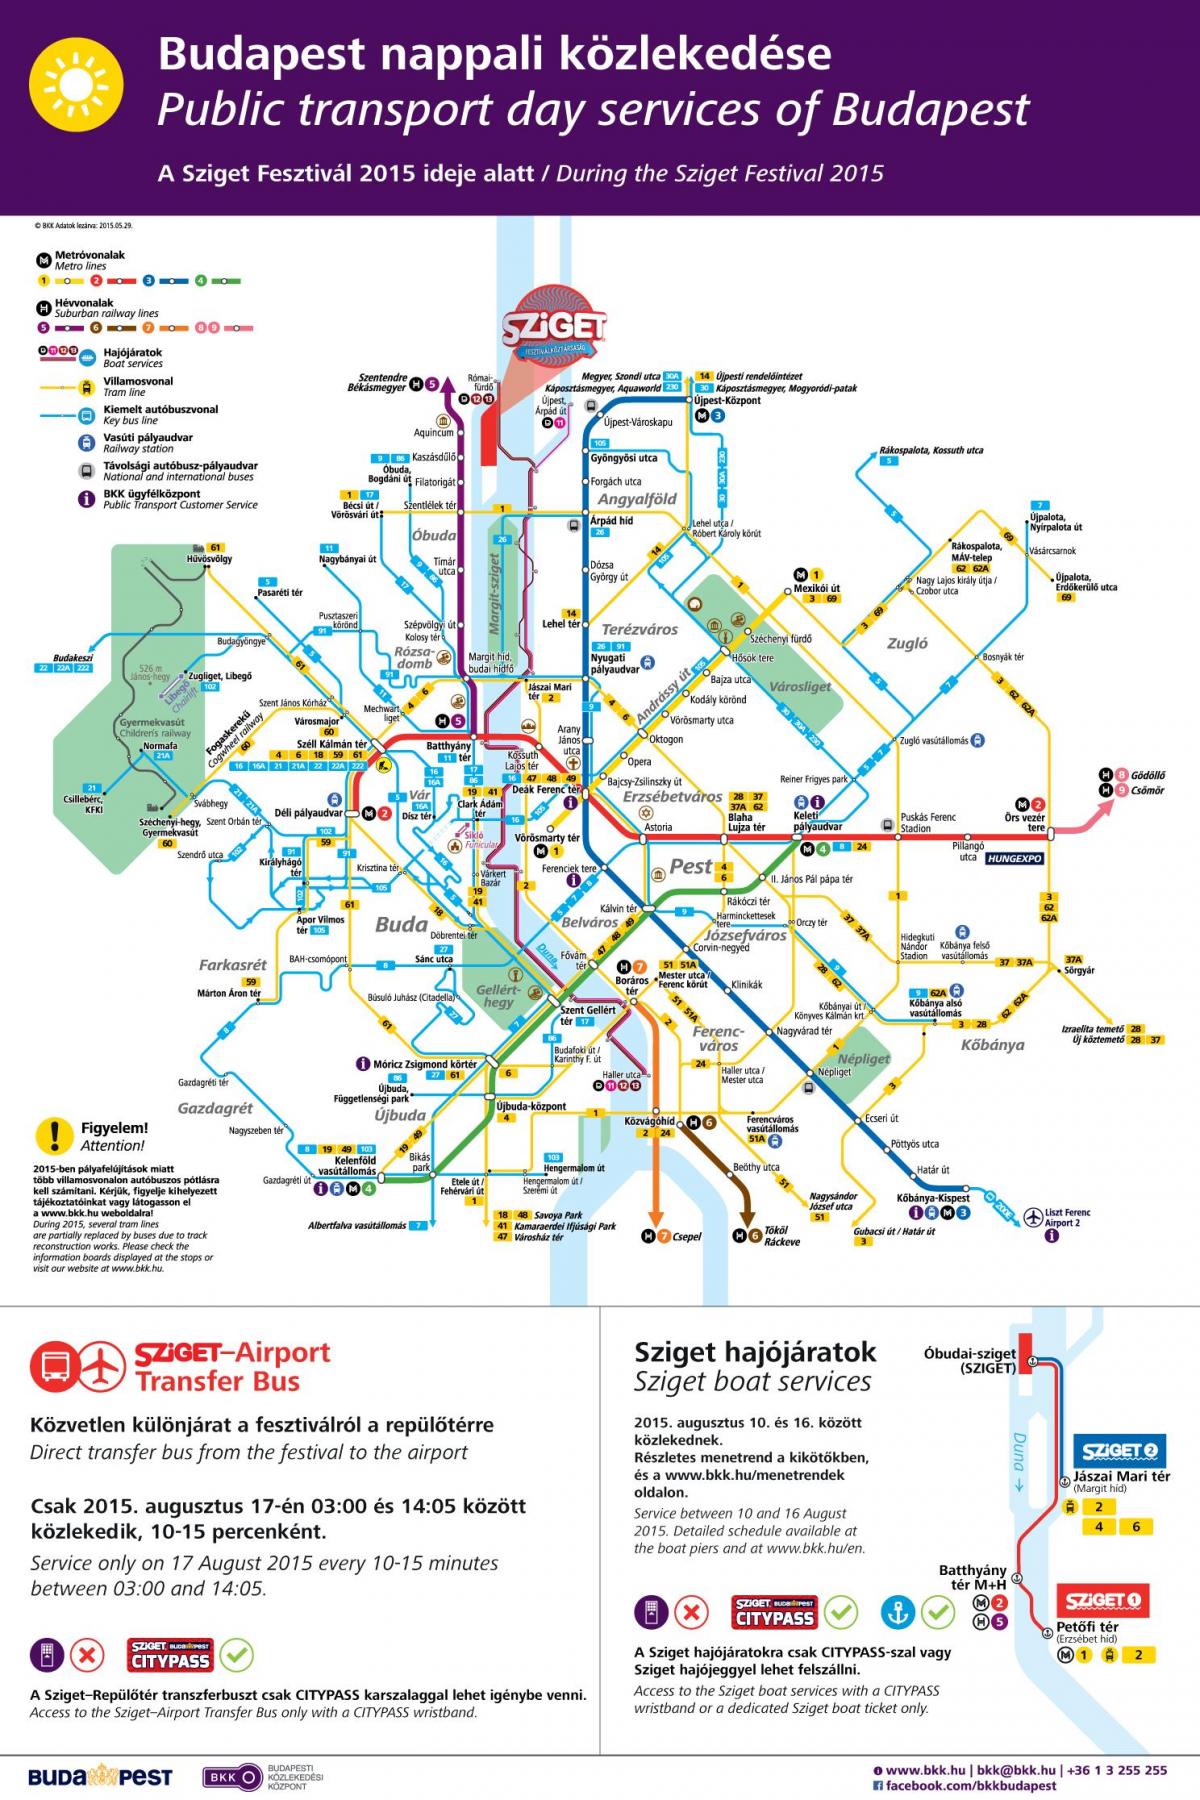 будапешт трамвай газрын зураг